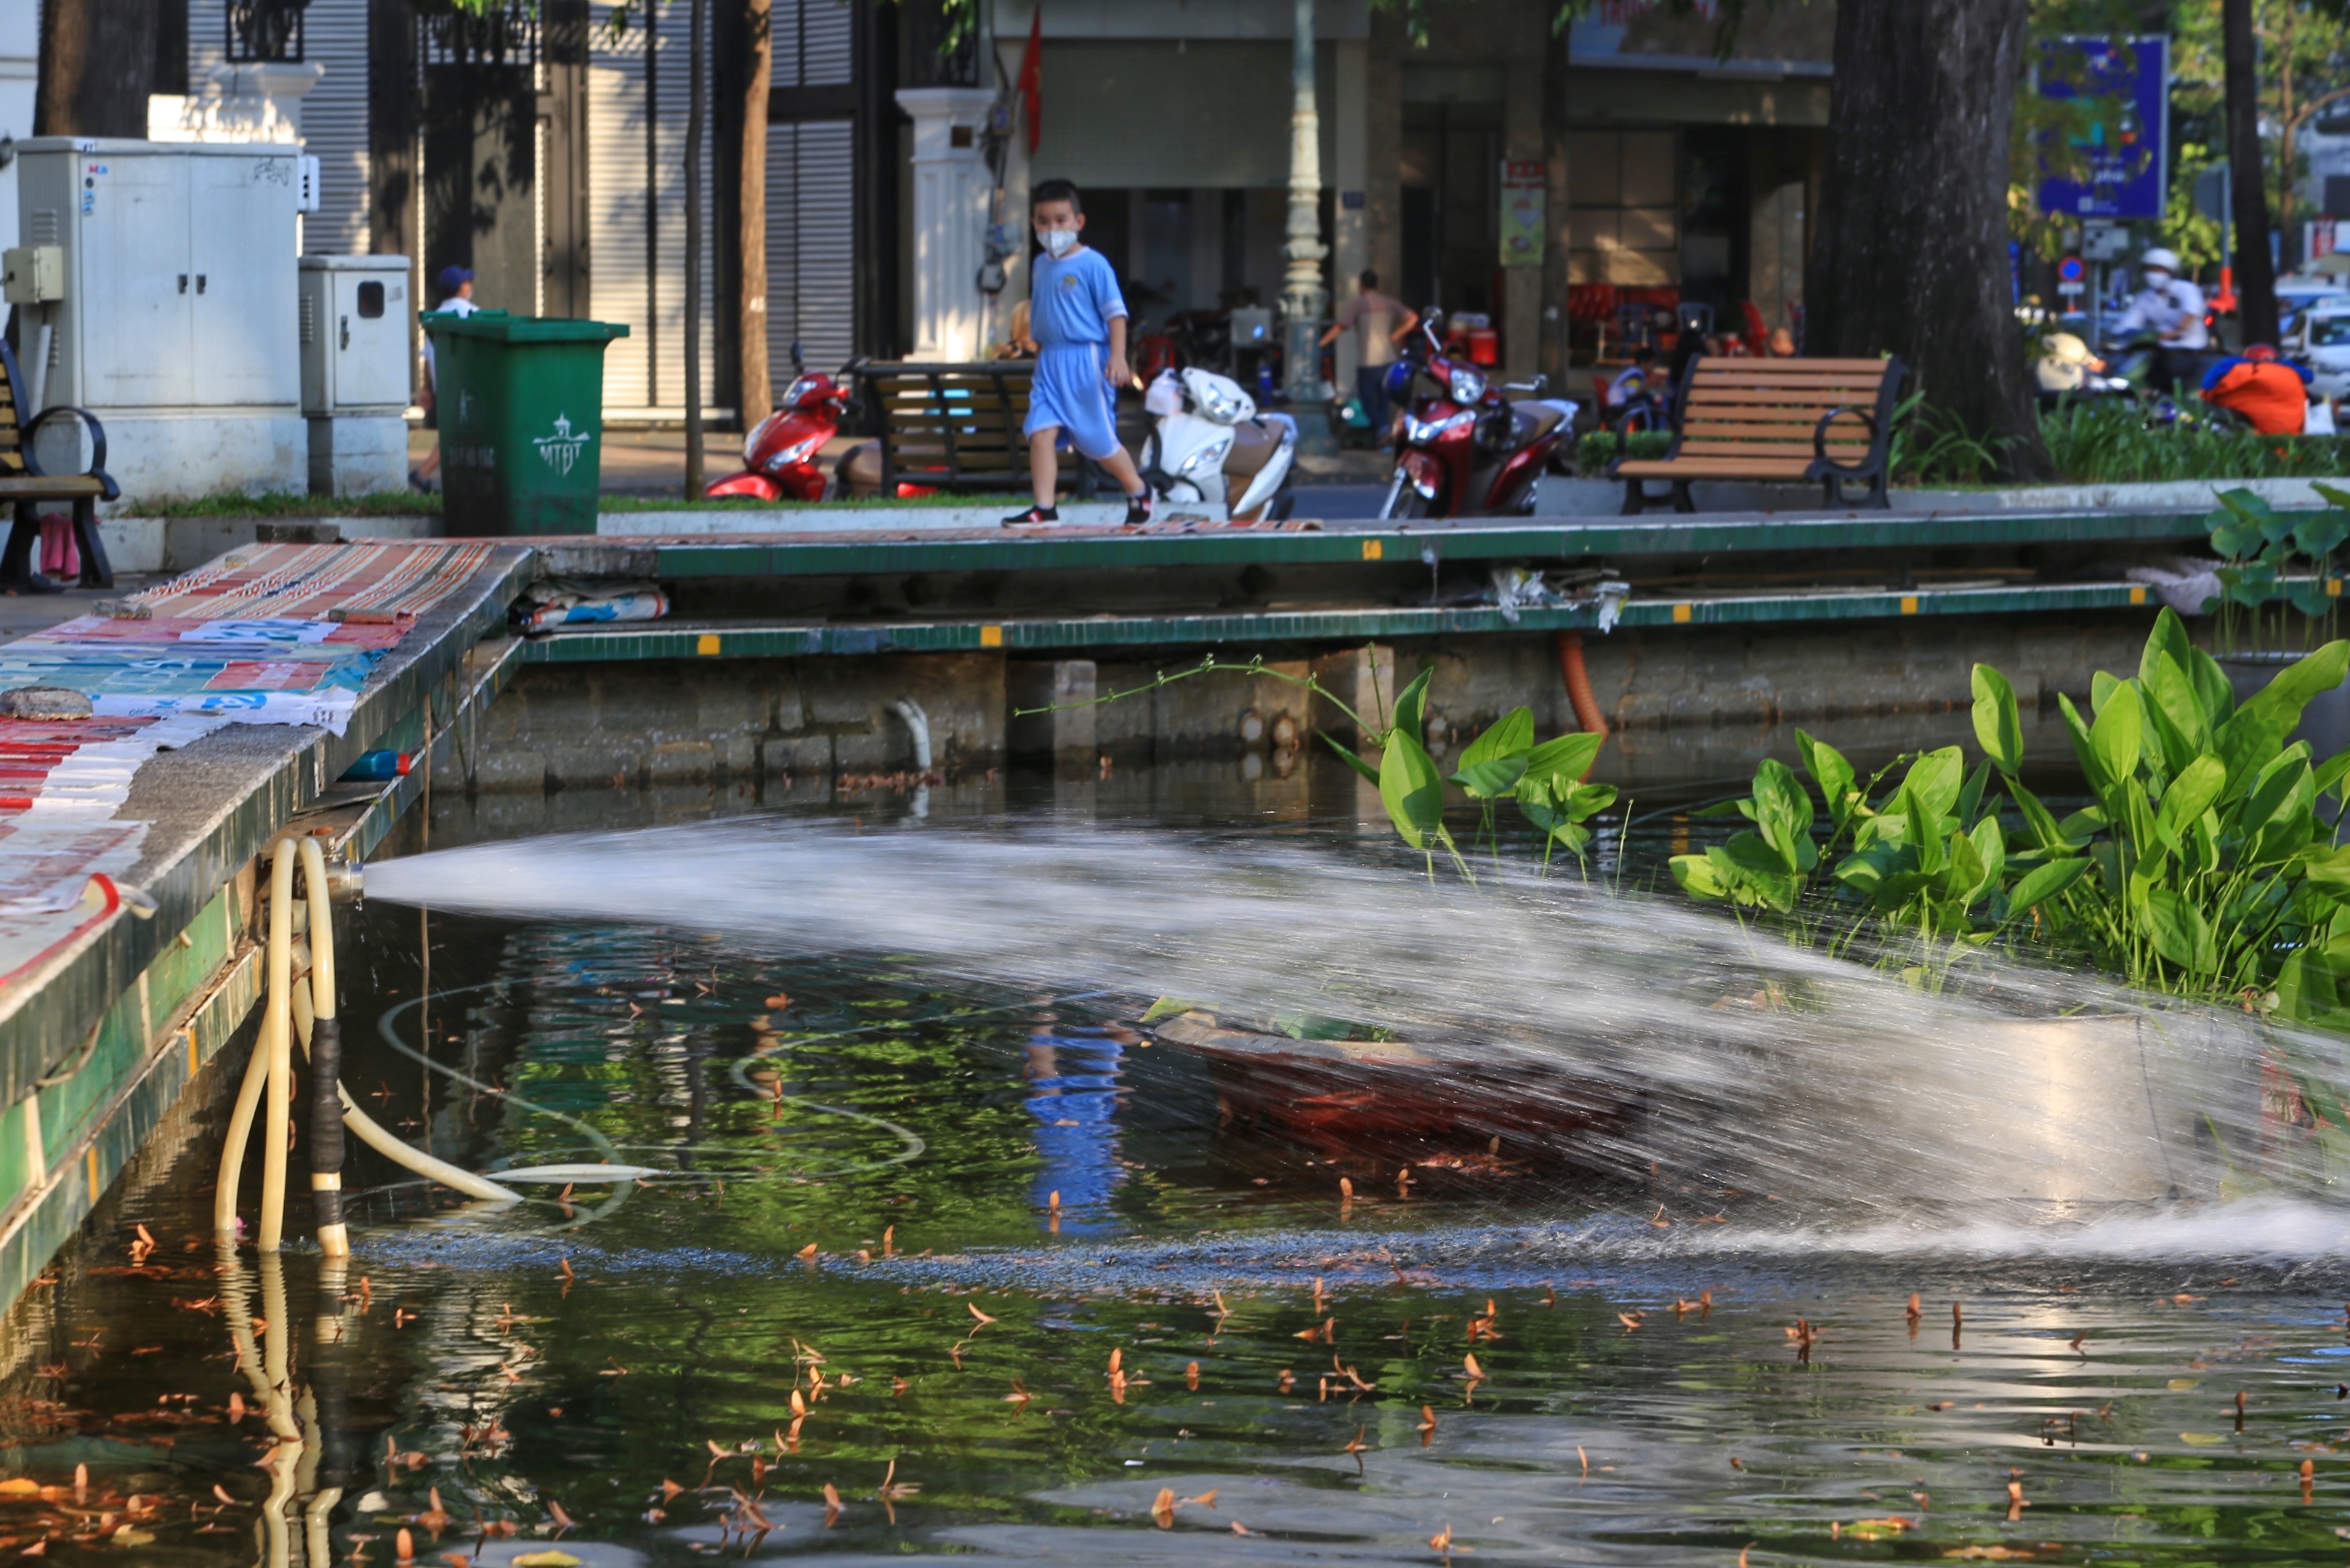 Hồ Con Rùa: Hồ Con Rùa - một trong những địa điểm du lịch nổi tiếng ở Hà Nội. Khung cảnh yên bình và người dân thân thiện sẽ khiến bạn đắm say. Hãy nhấp chuột để khám phá hồ Con Rùa đẹp mê hồn qua các hình ảnh.